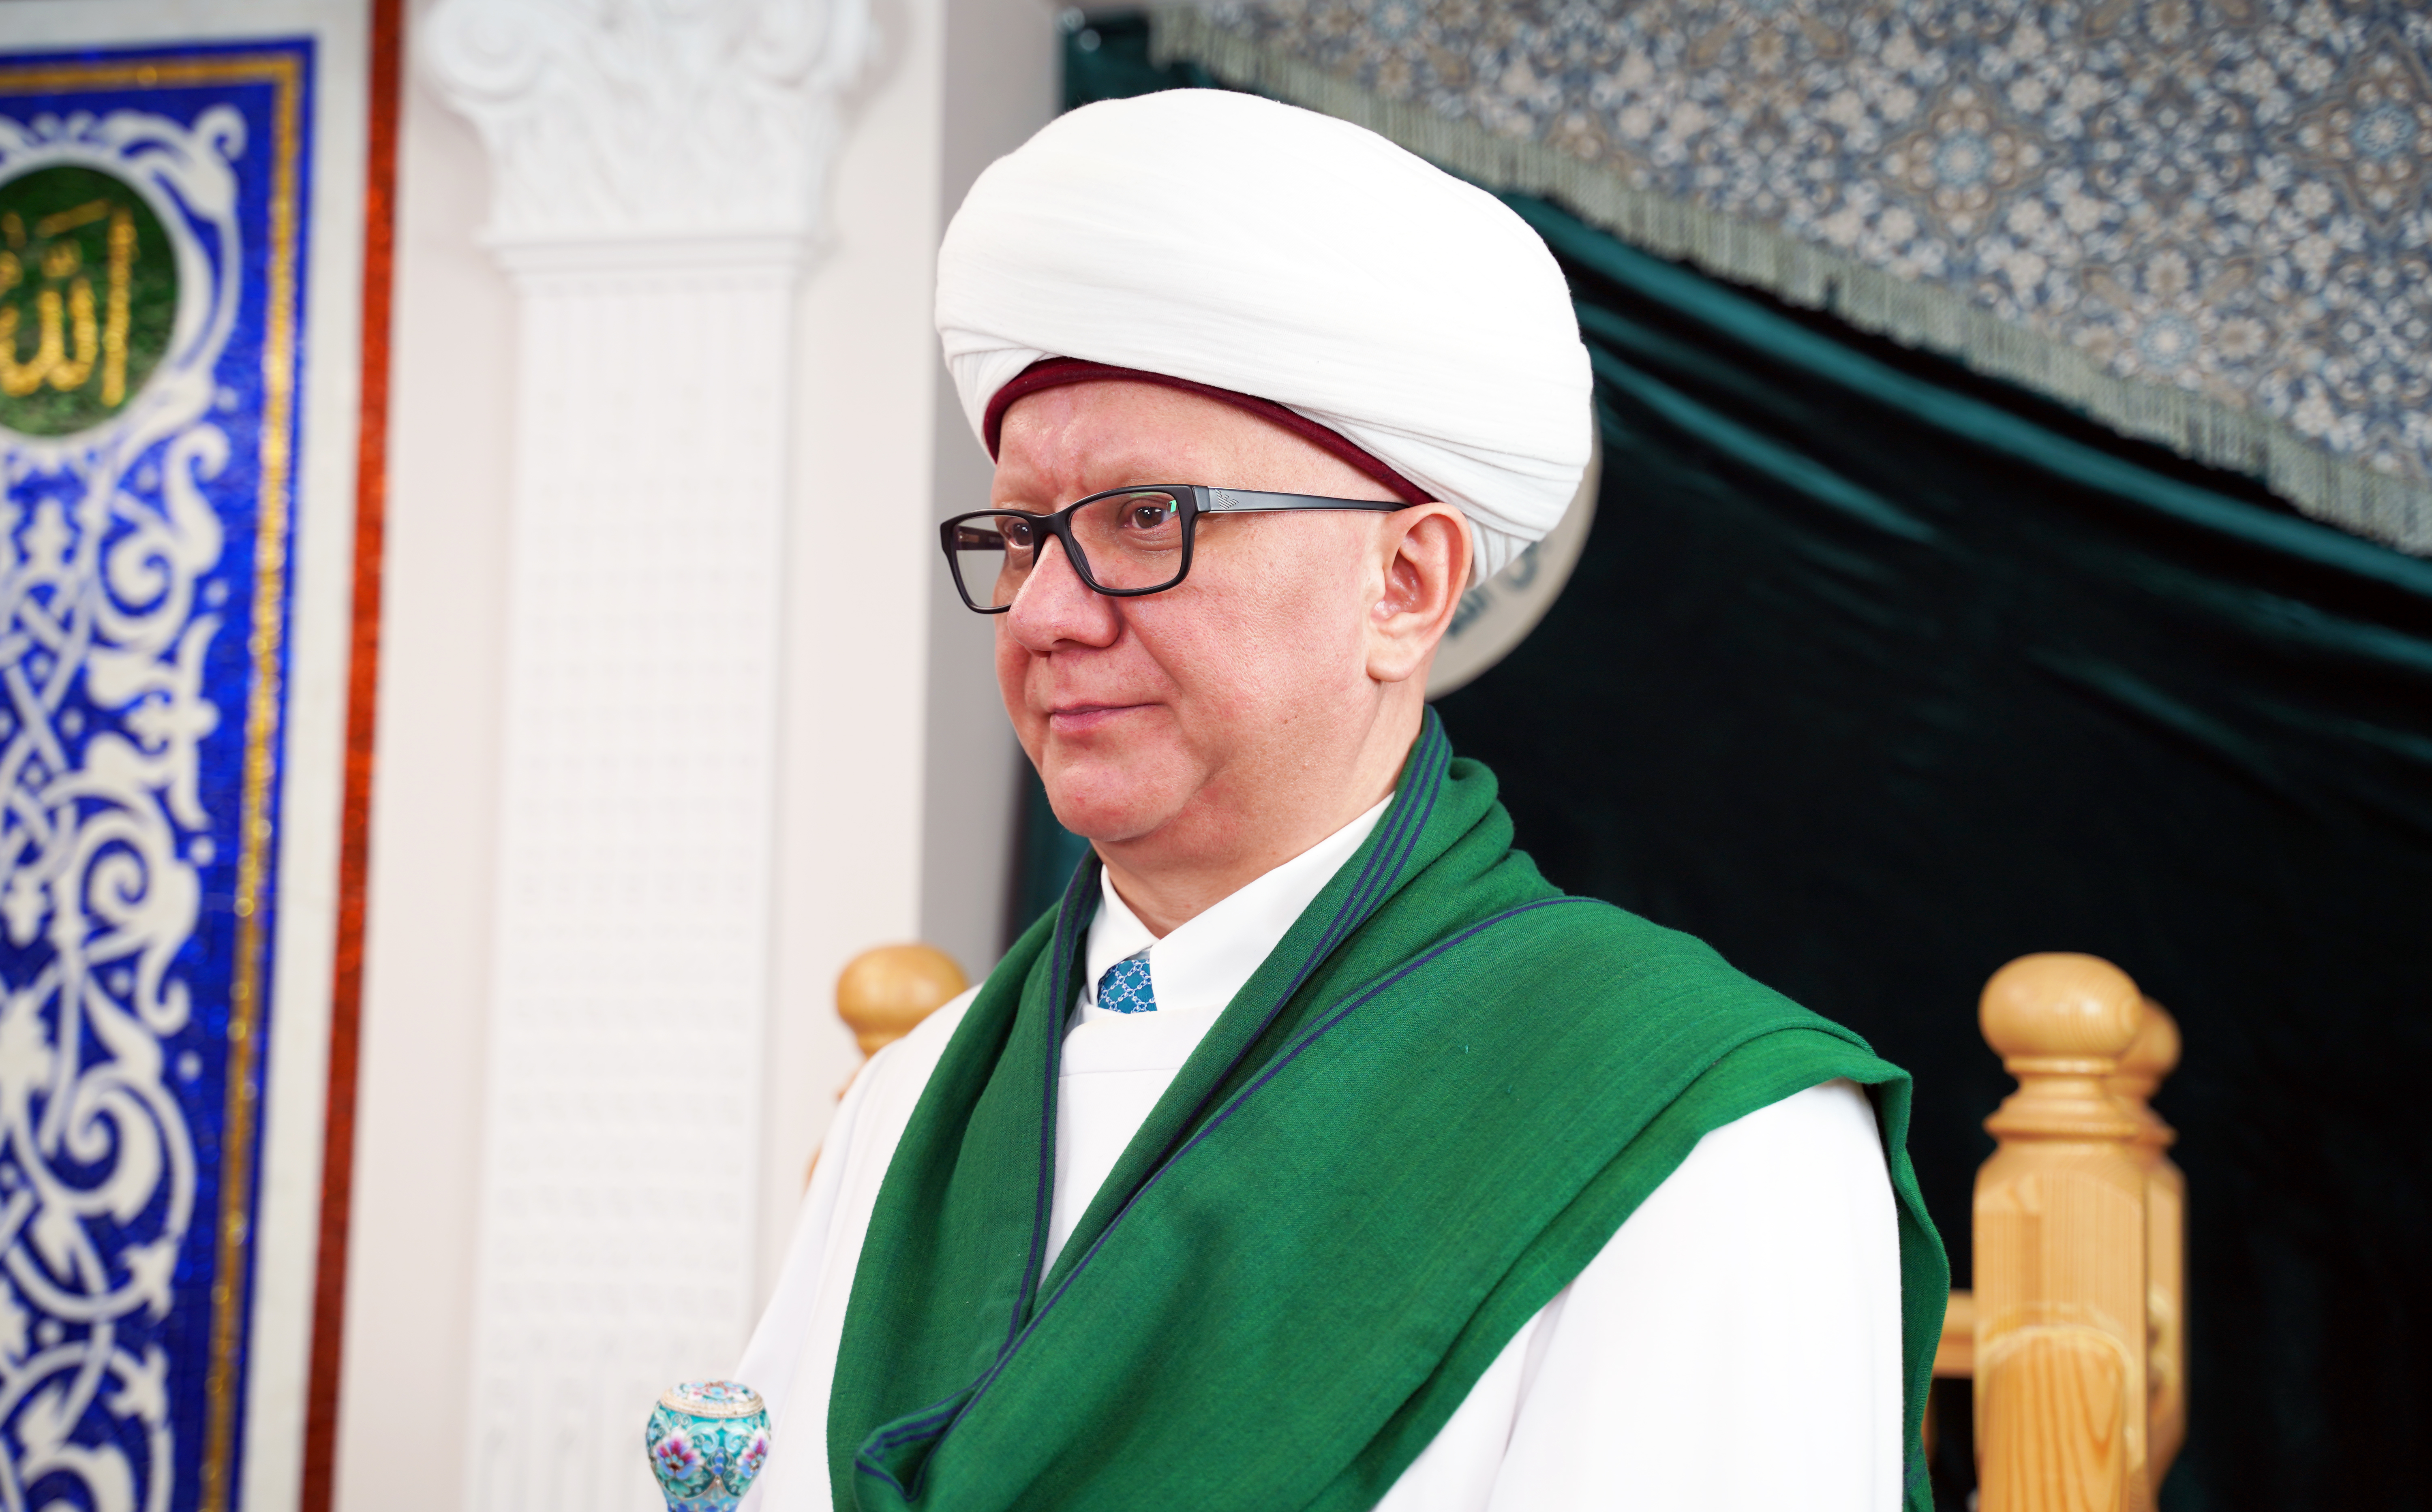 Муфтий Альбир хазрат Крганов поздравил соотечественников с Международным днем семьи